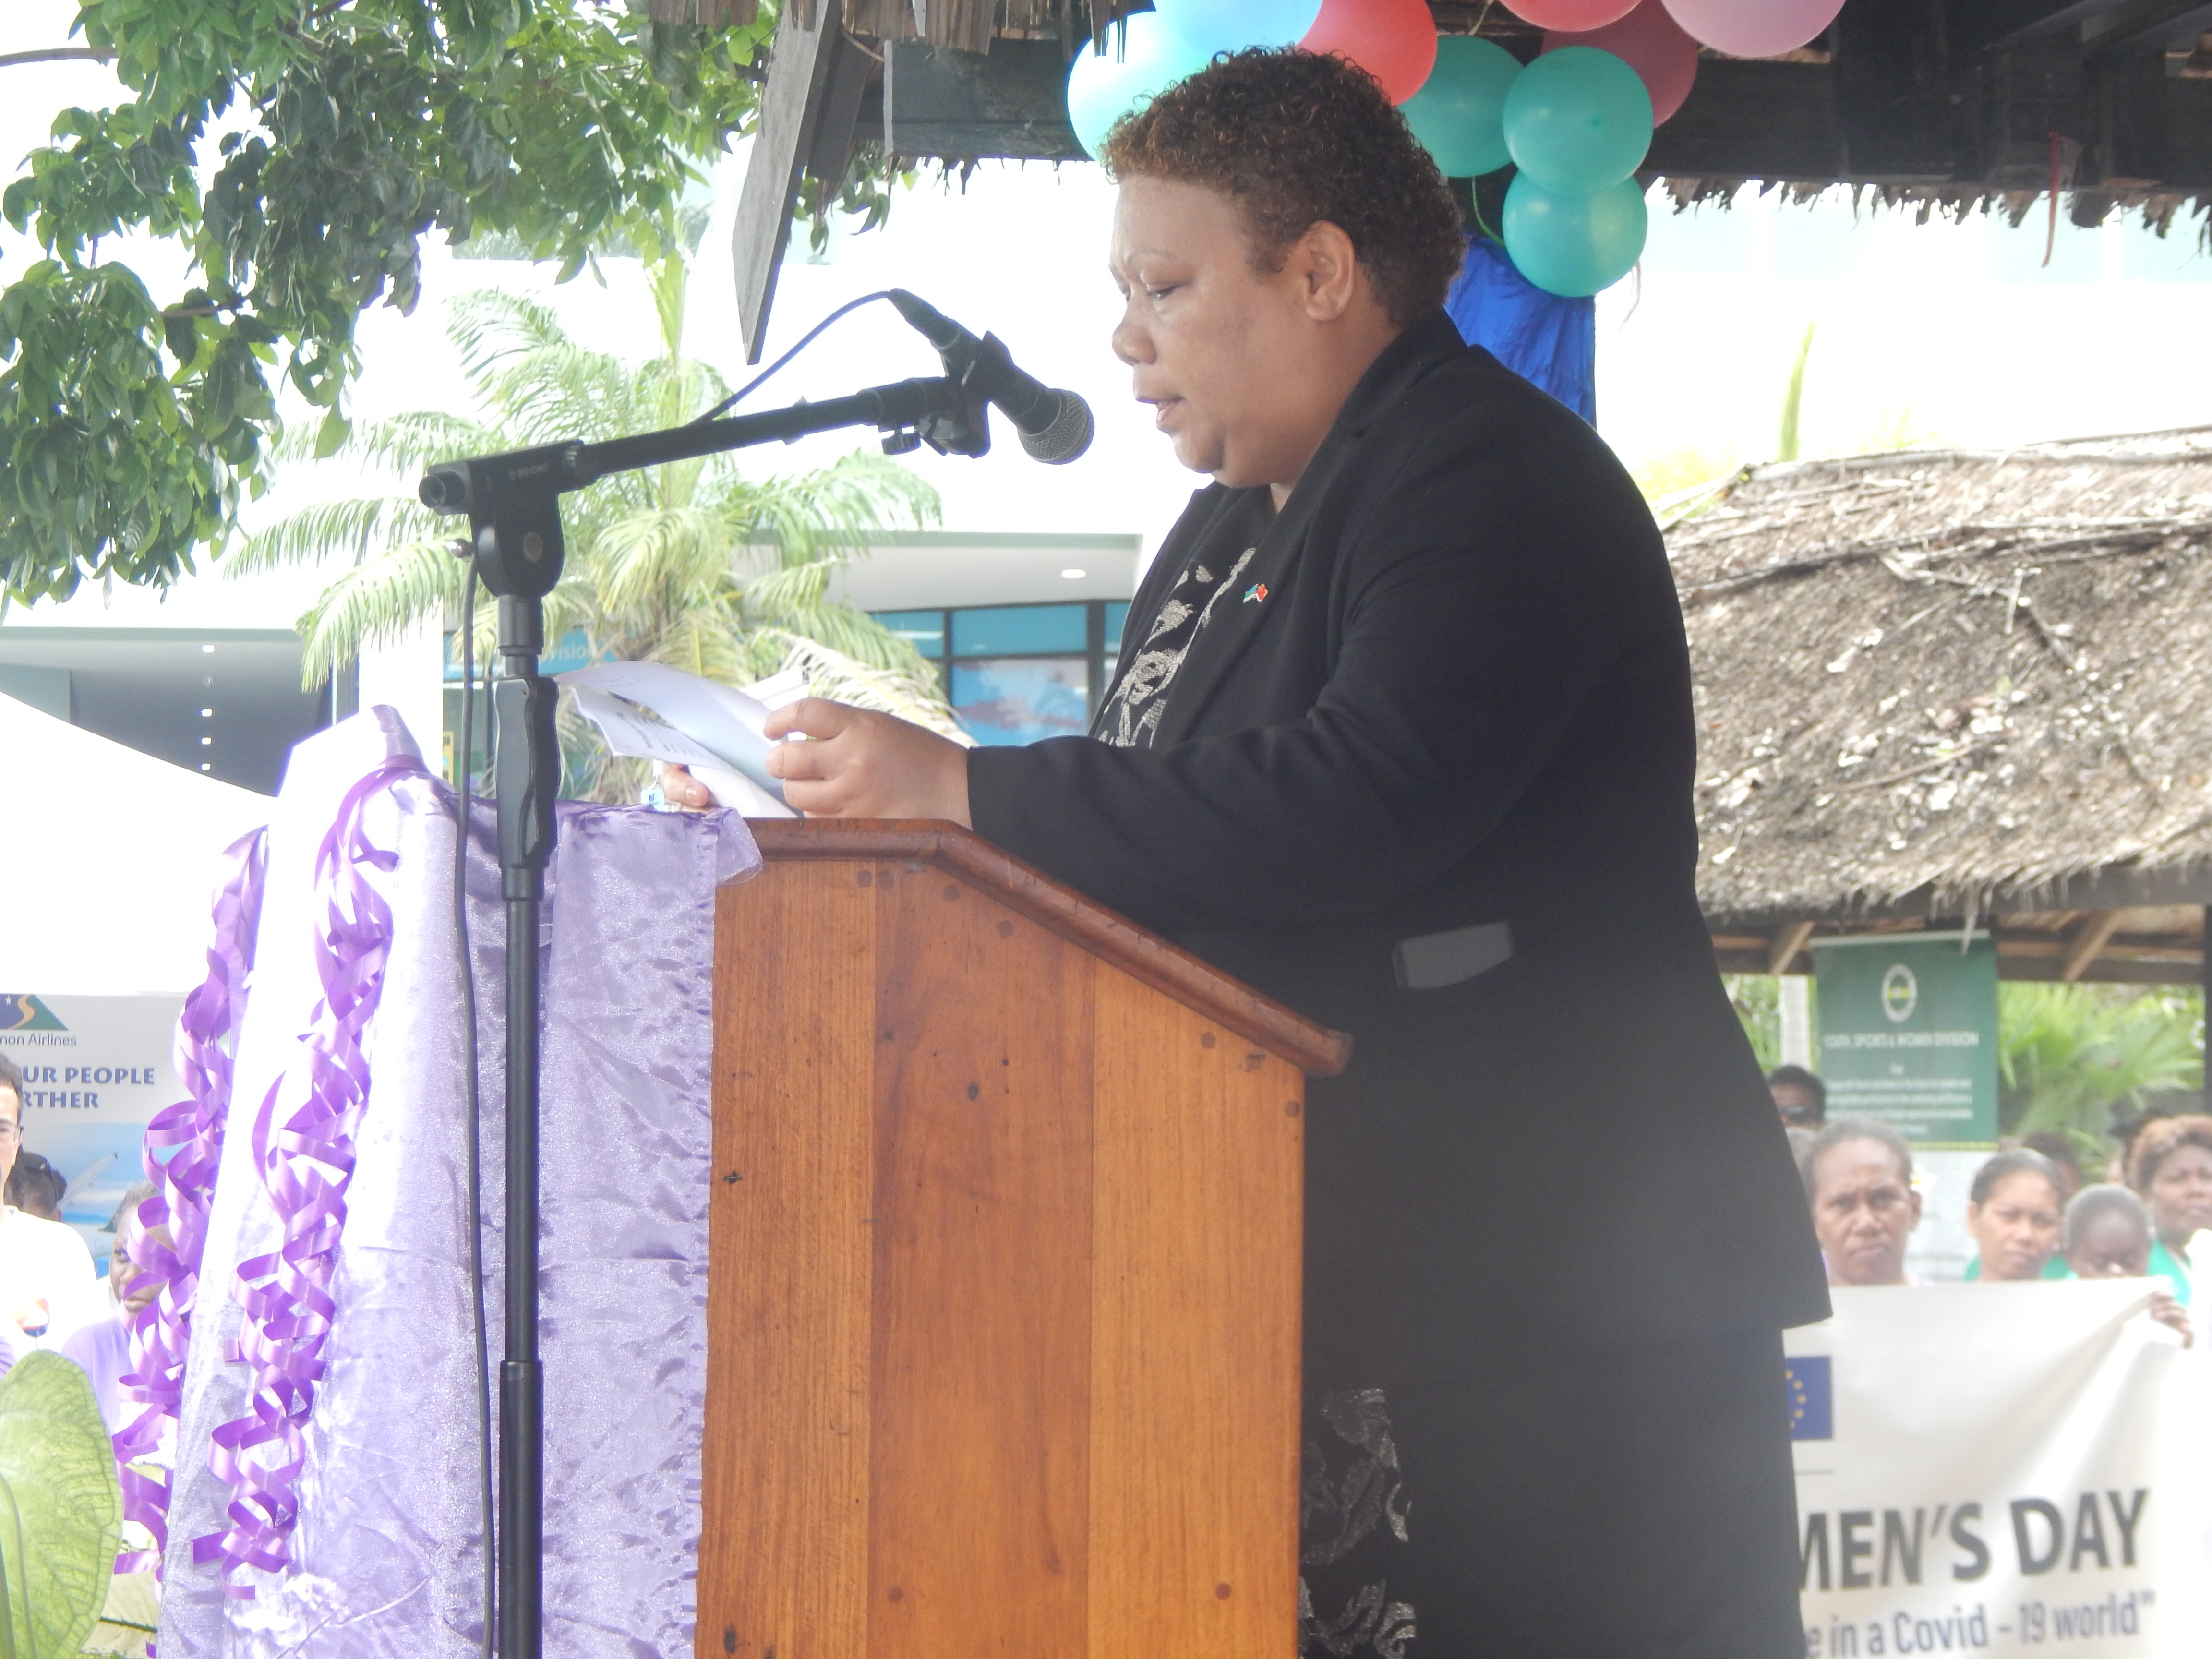 Minister for Women Hon. Tuki